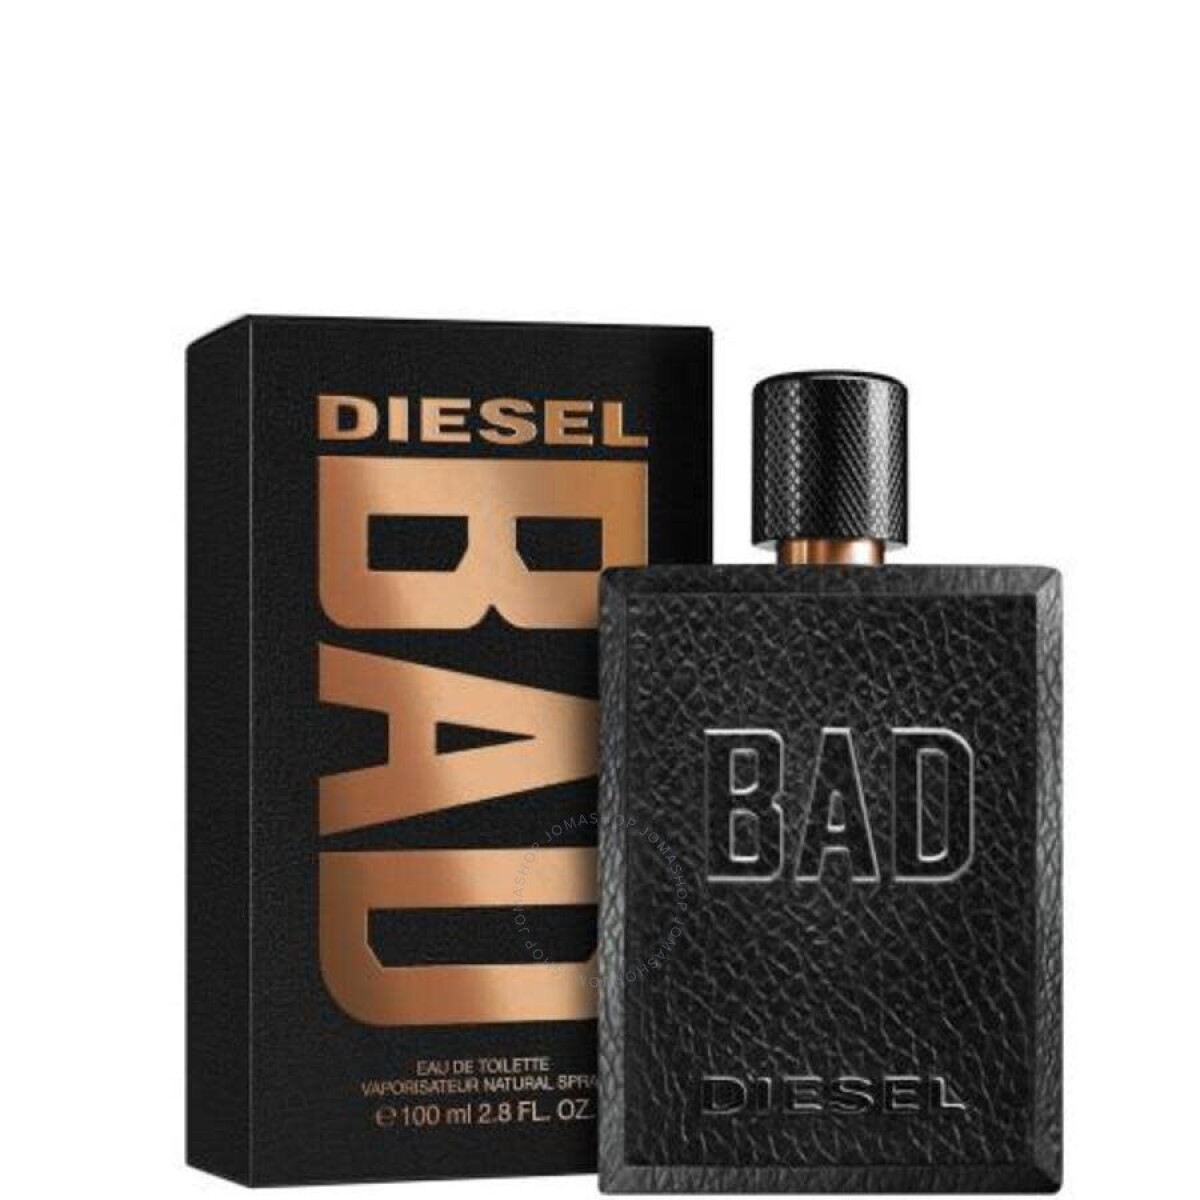 Perfume Diesel Bad Edt 100ml. 